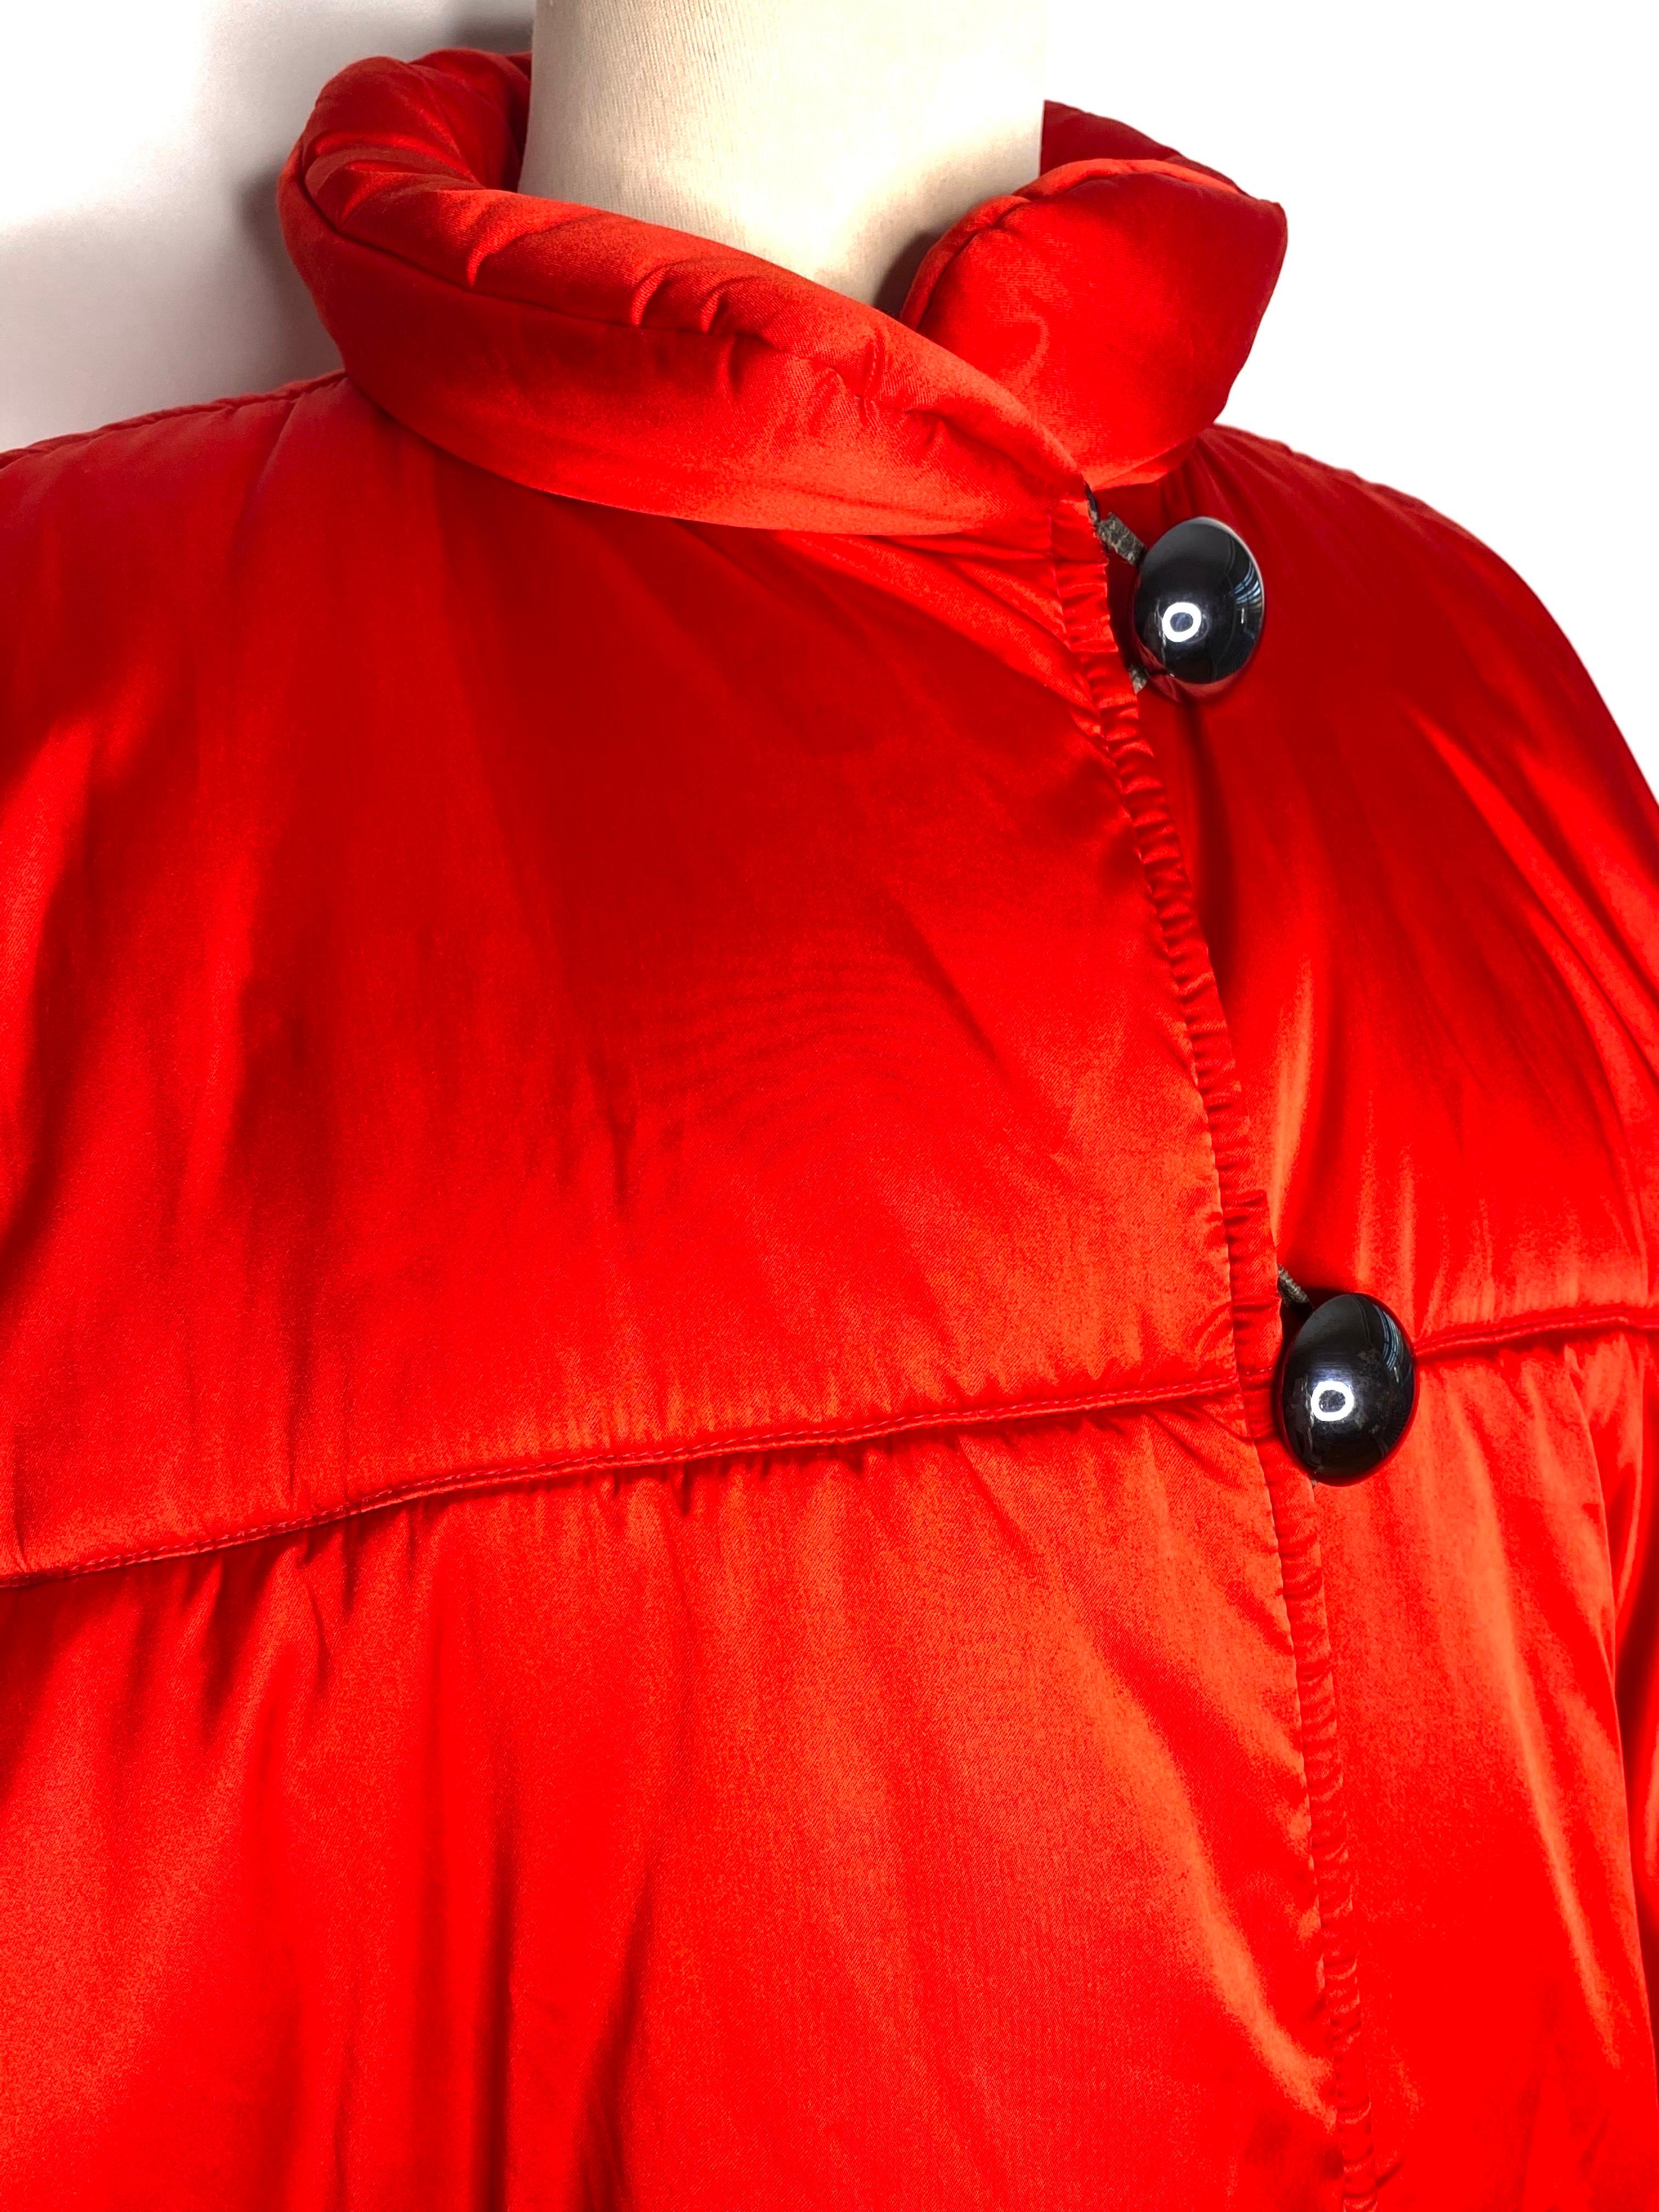 Vintage Yves Saint Laurent Rive gauche veste longue en duvet des années 1980.
Rouge feu avec de jolis et imposants boutons en métal couleur carbone.
Poches raglan.
Les étiquettes de taille et de composition sont manquantes, taille estimée 40/42 se